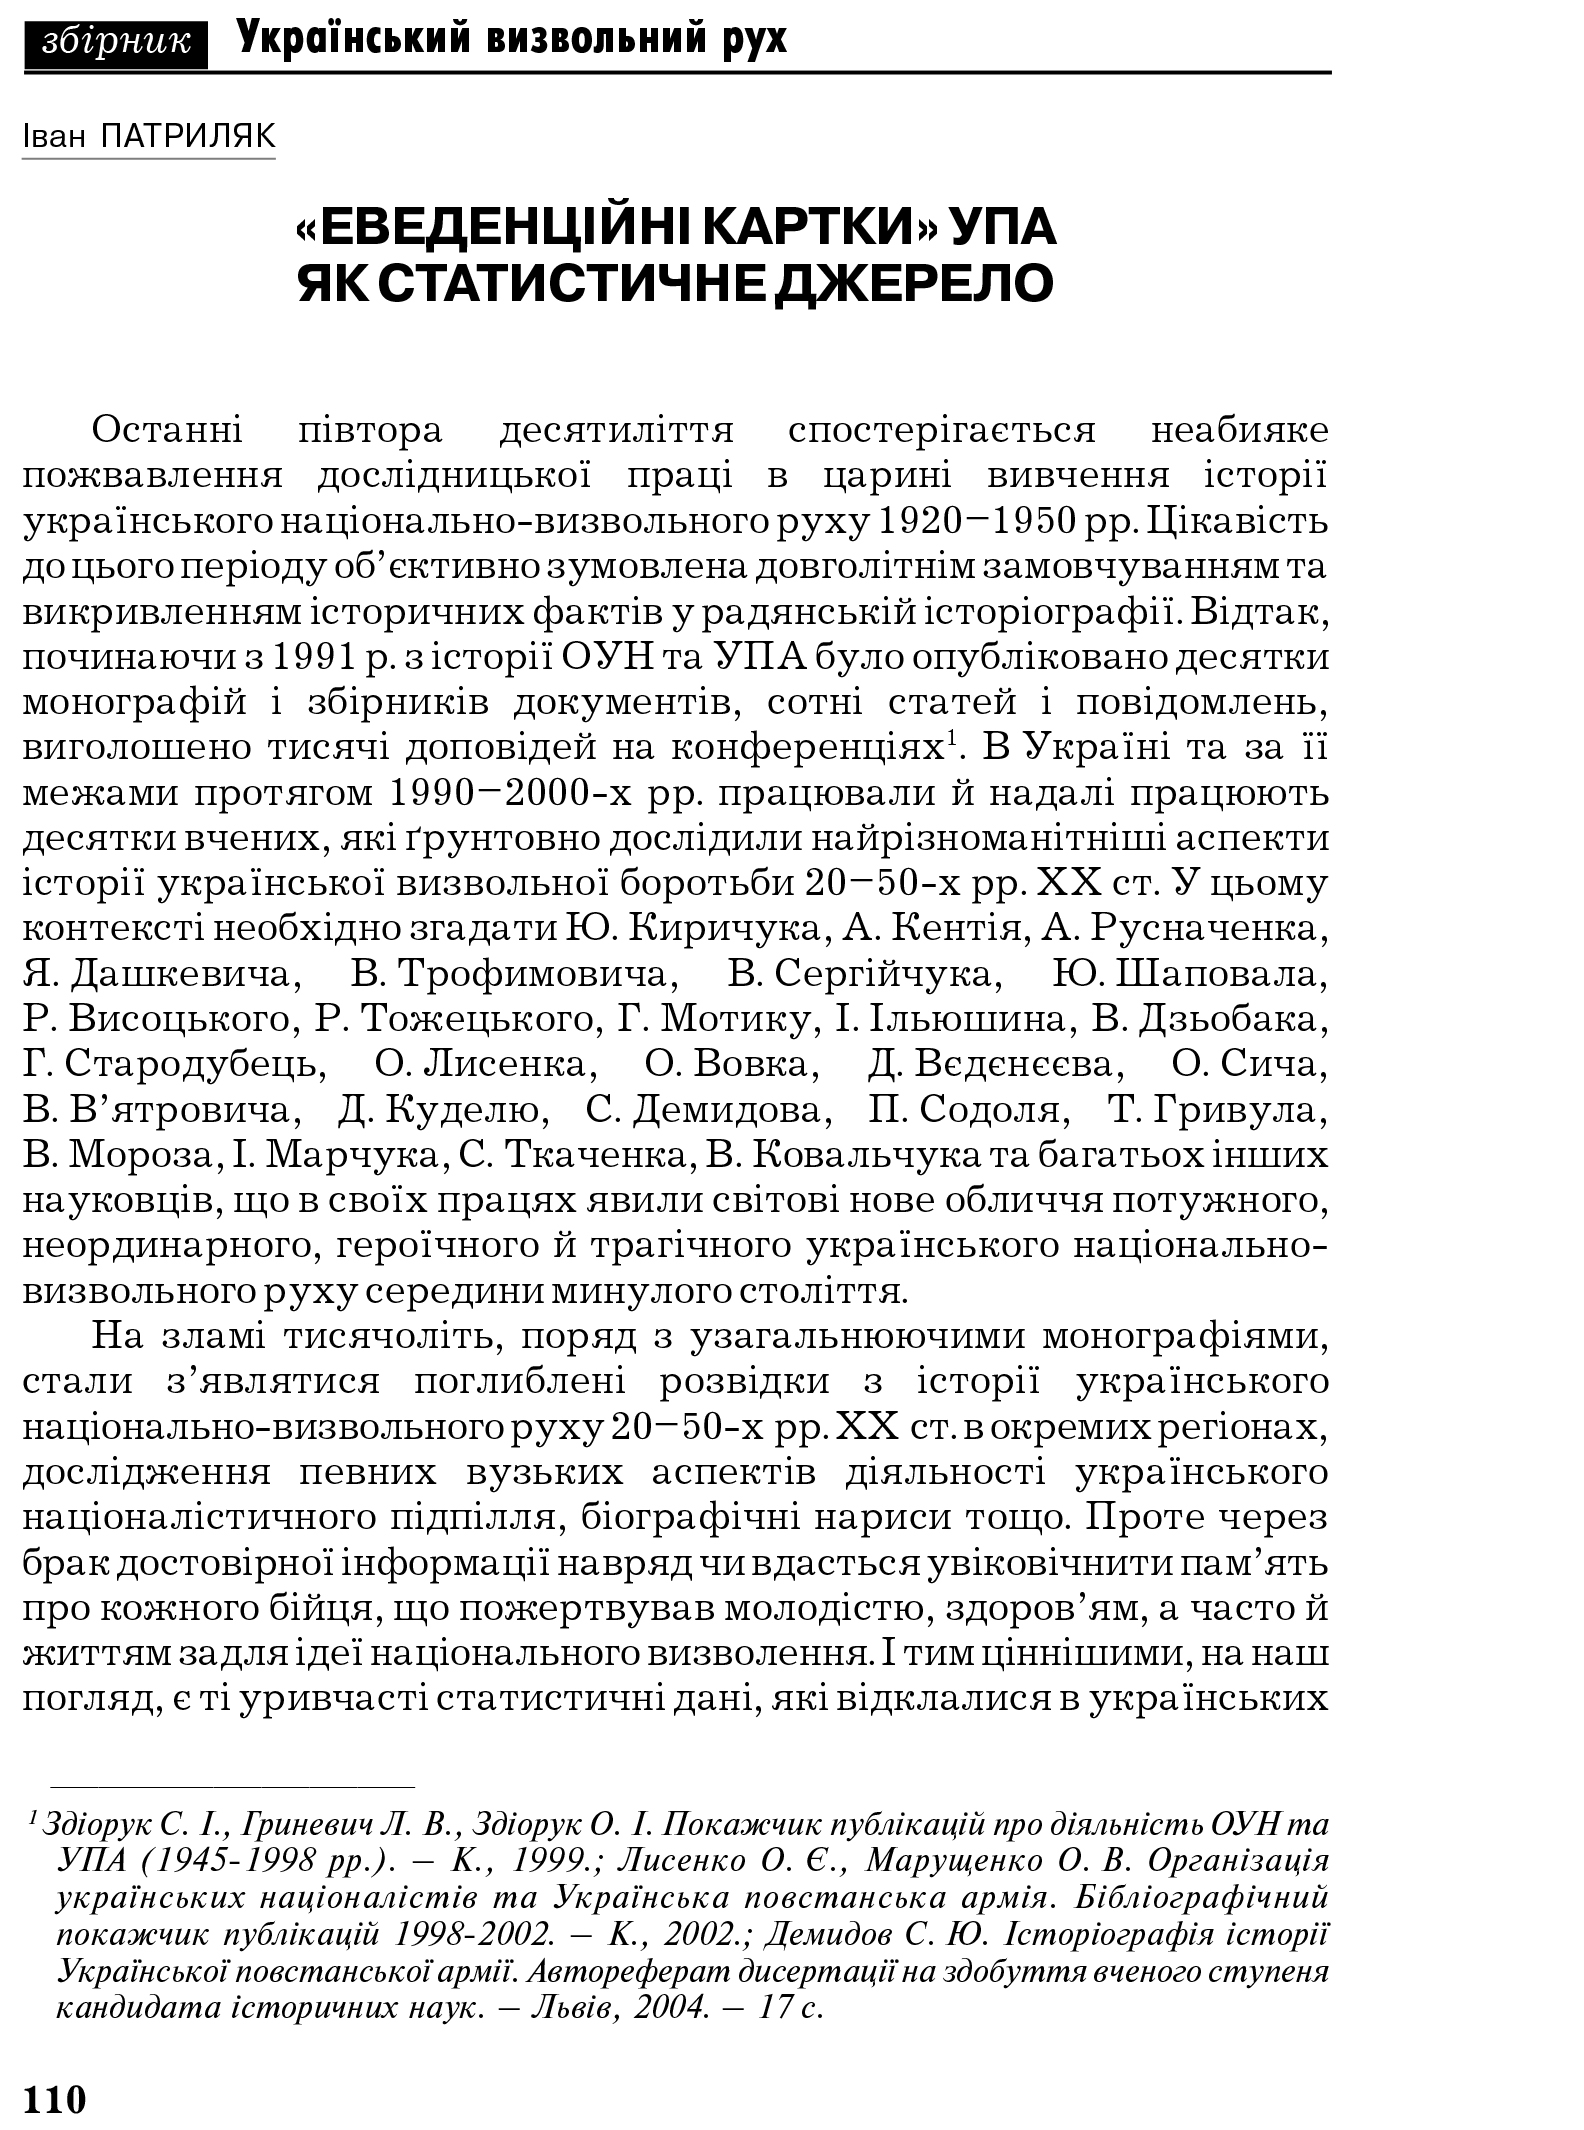 Український визвольний рух №6, ст. 110 - 147